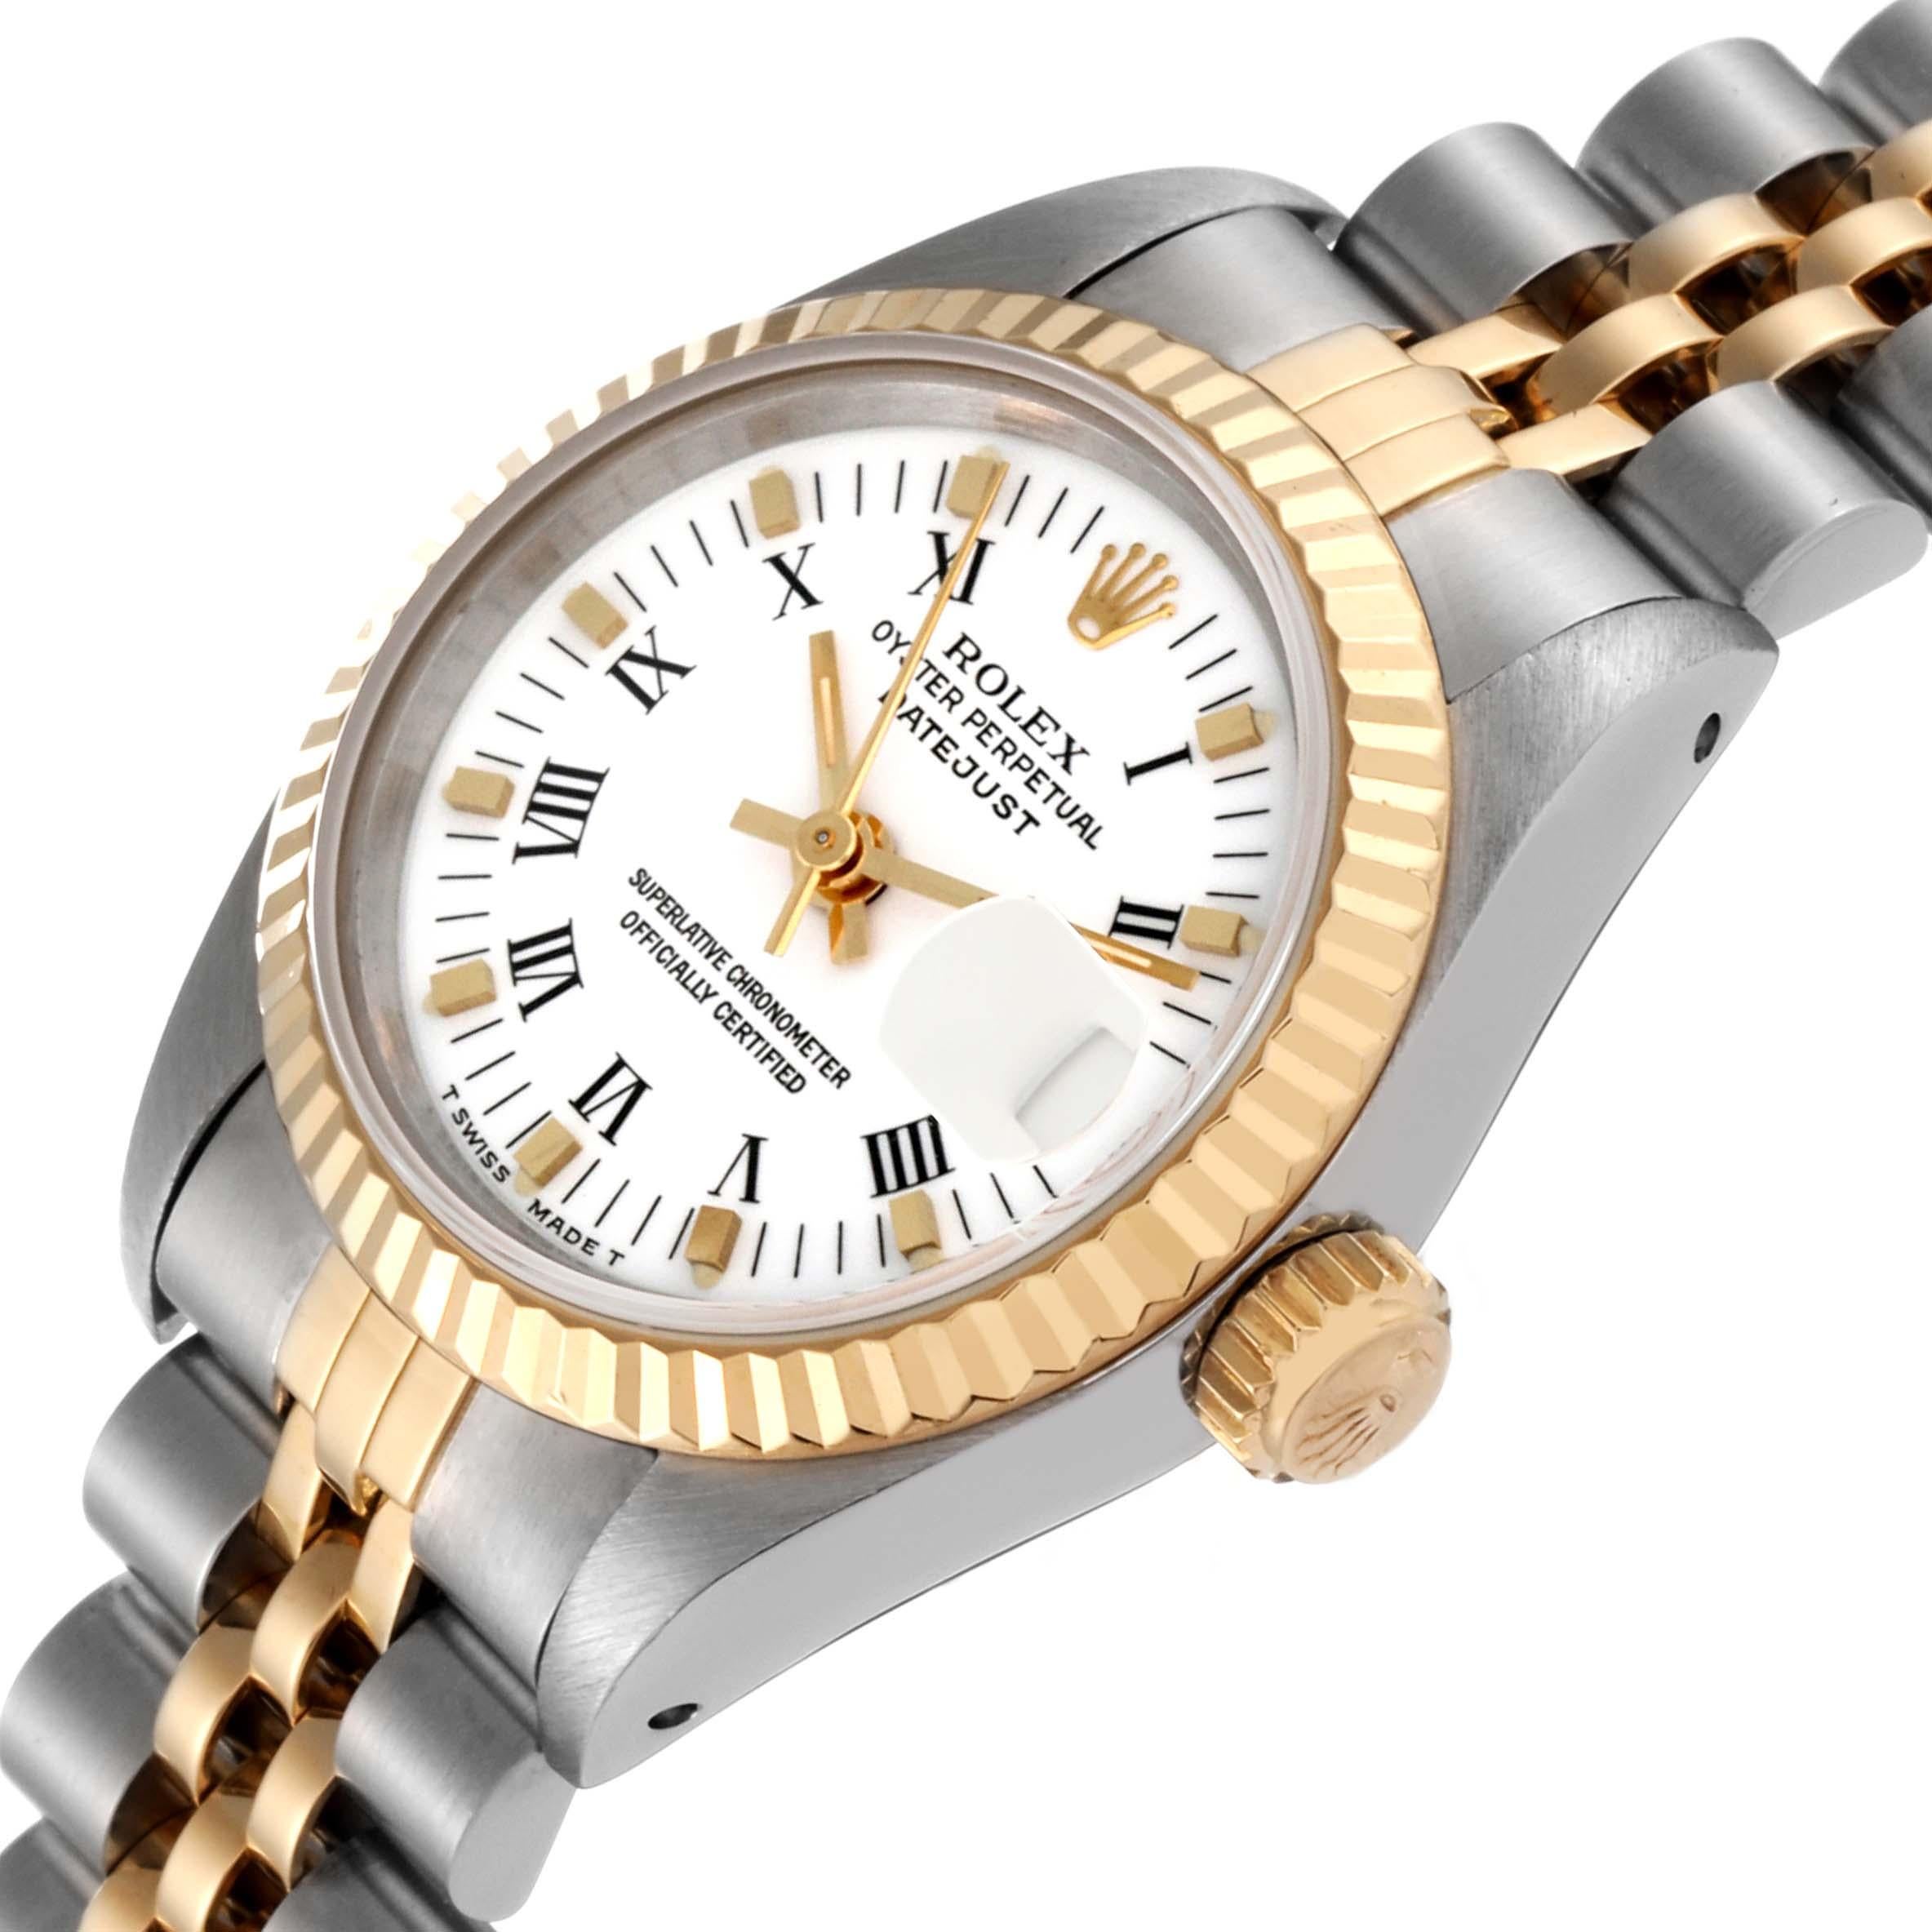  Rolex Montre Datejust pour femme en acier et or jaune avec cadran romain blanc 69173 Pour femmes 